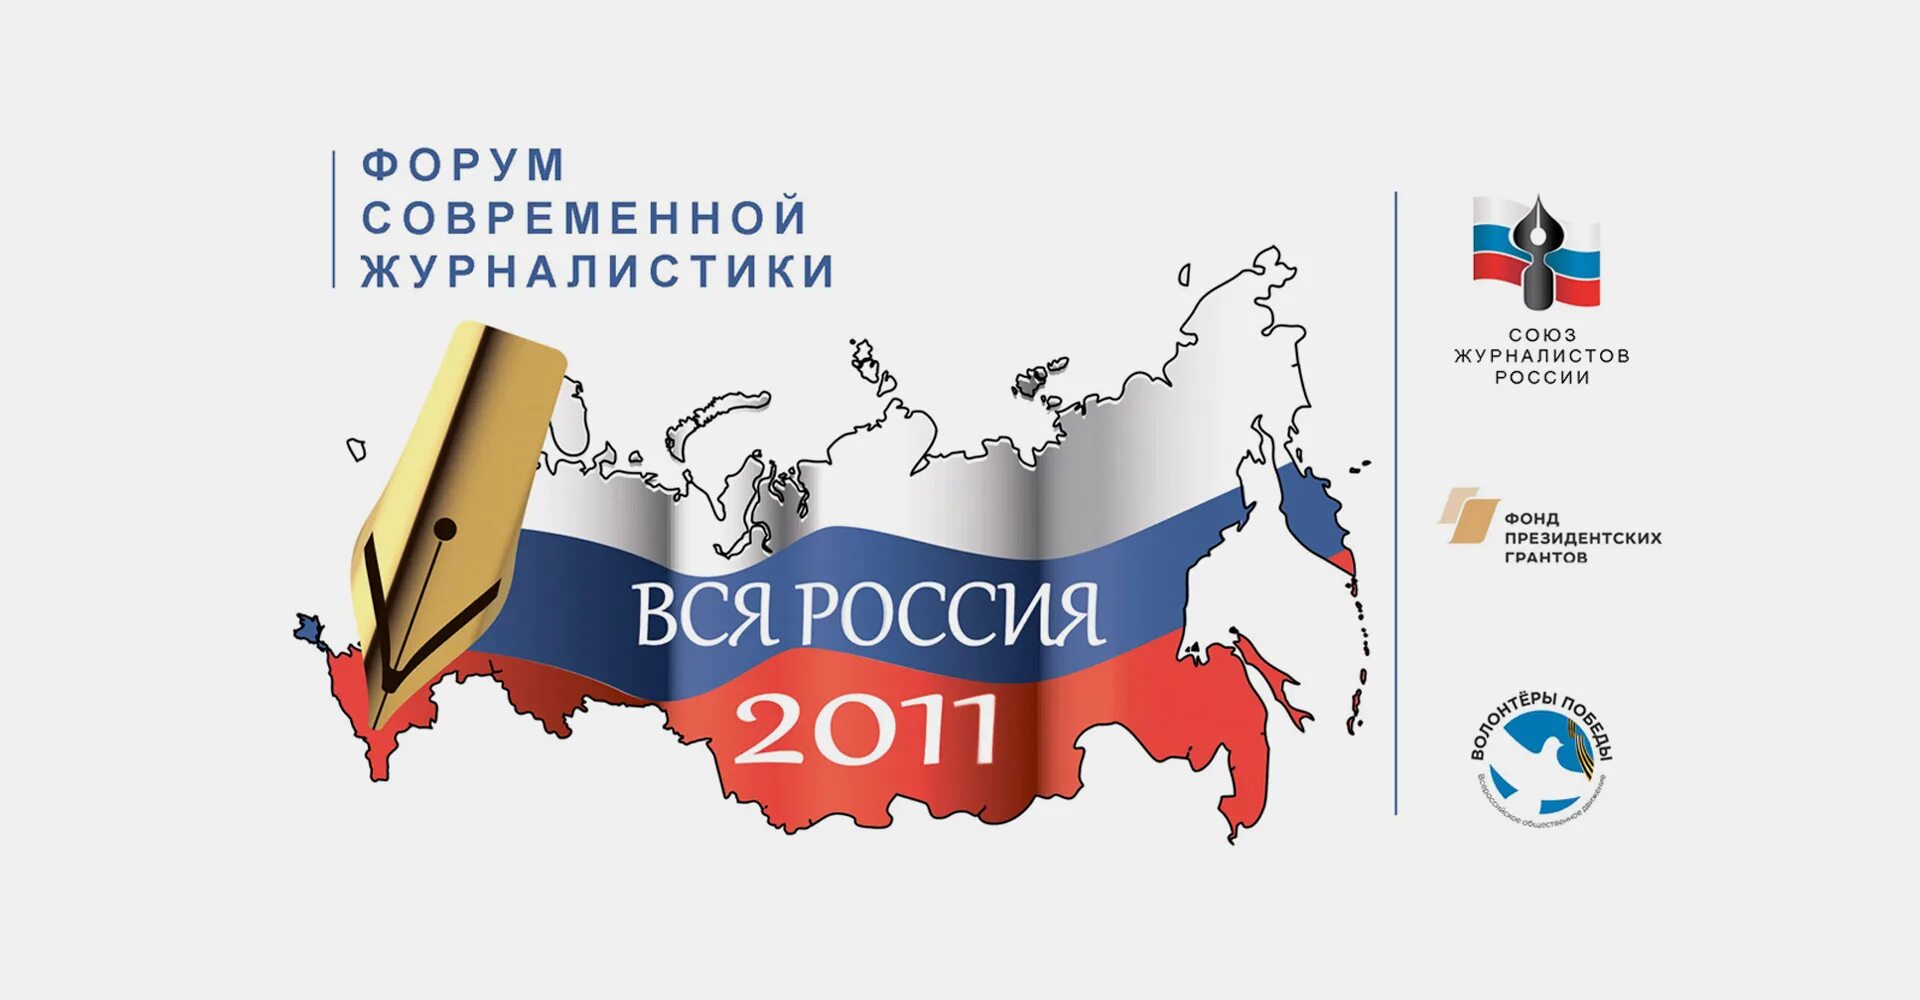 Вся россия 2011